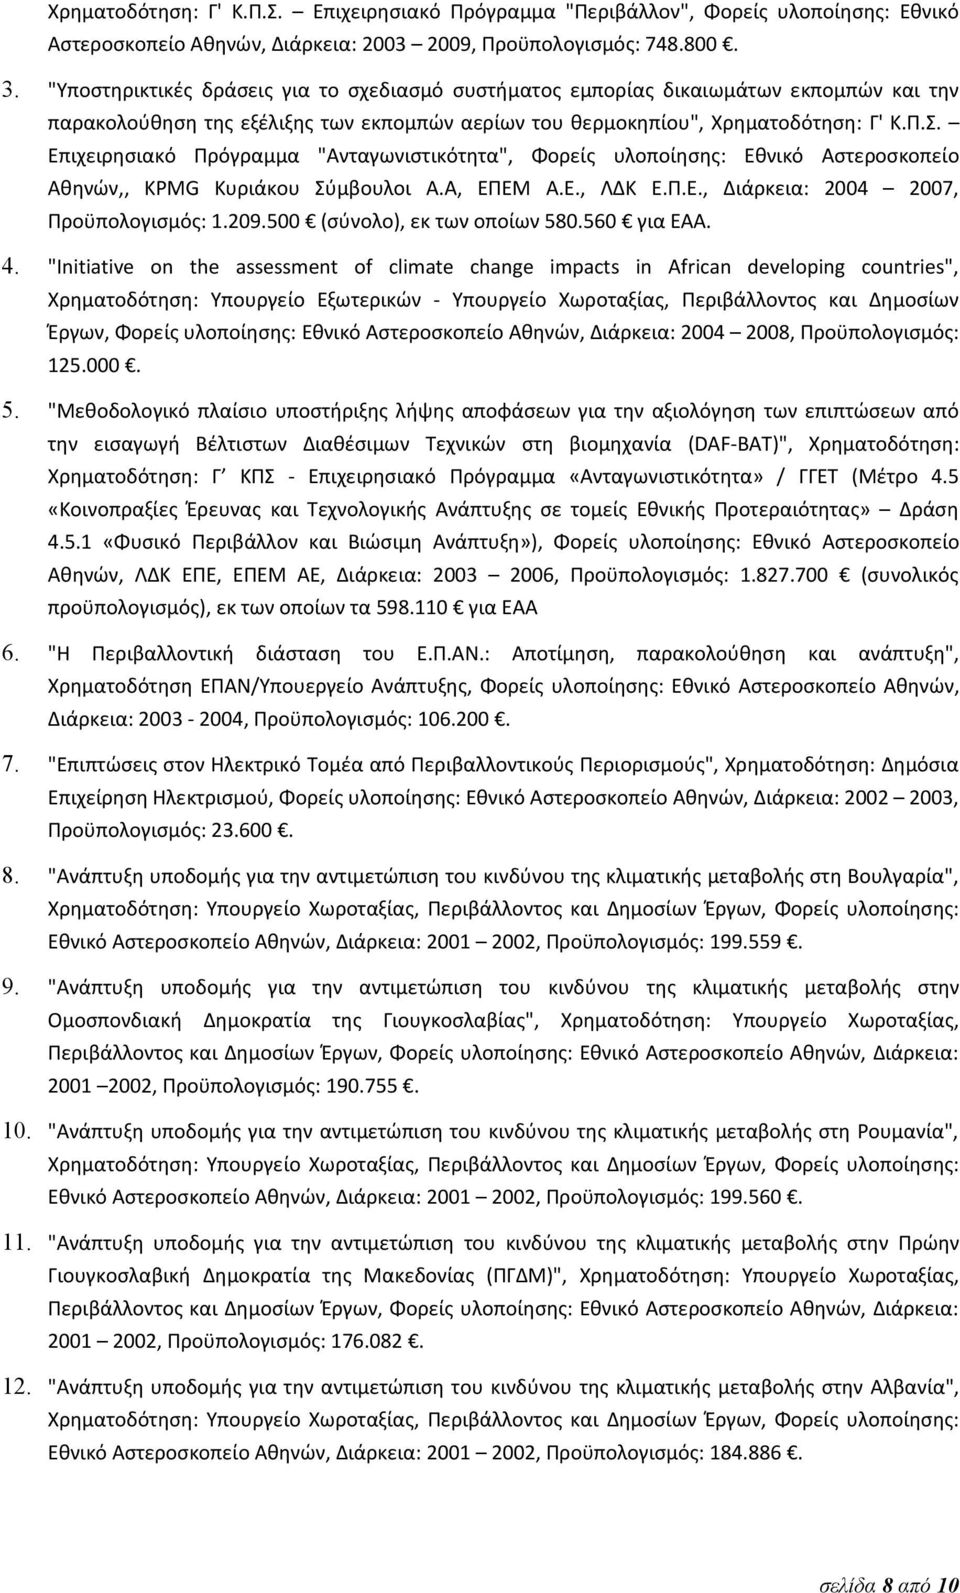 Επιχειρησιακό Πρόγραμμα "Ανταγωνιστικότητα", Φορείς υλοποίησης: Εθνικό Αστεροσκοπείο Αθηνών,, KPMG Κυριάκου Σύμβουλοι Α.Α, ΕΠΕΜ Α.Ε., ΛΔΚ Ε.Π.Ε., Διάρκεια: 2004 2007, Προϋπολογισμός: 1.209.